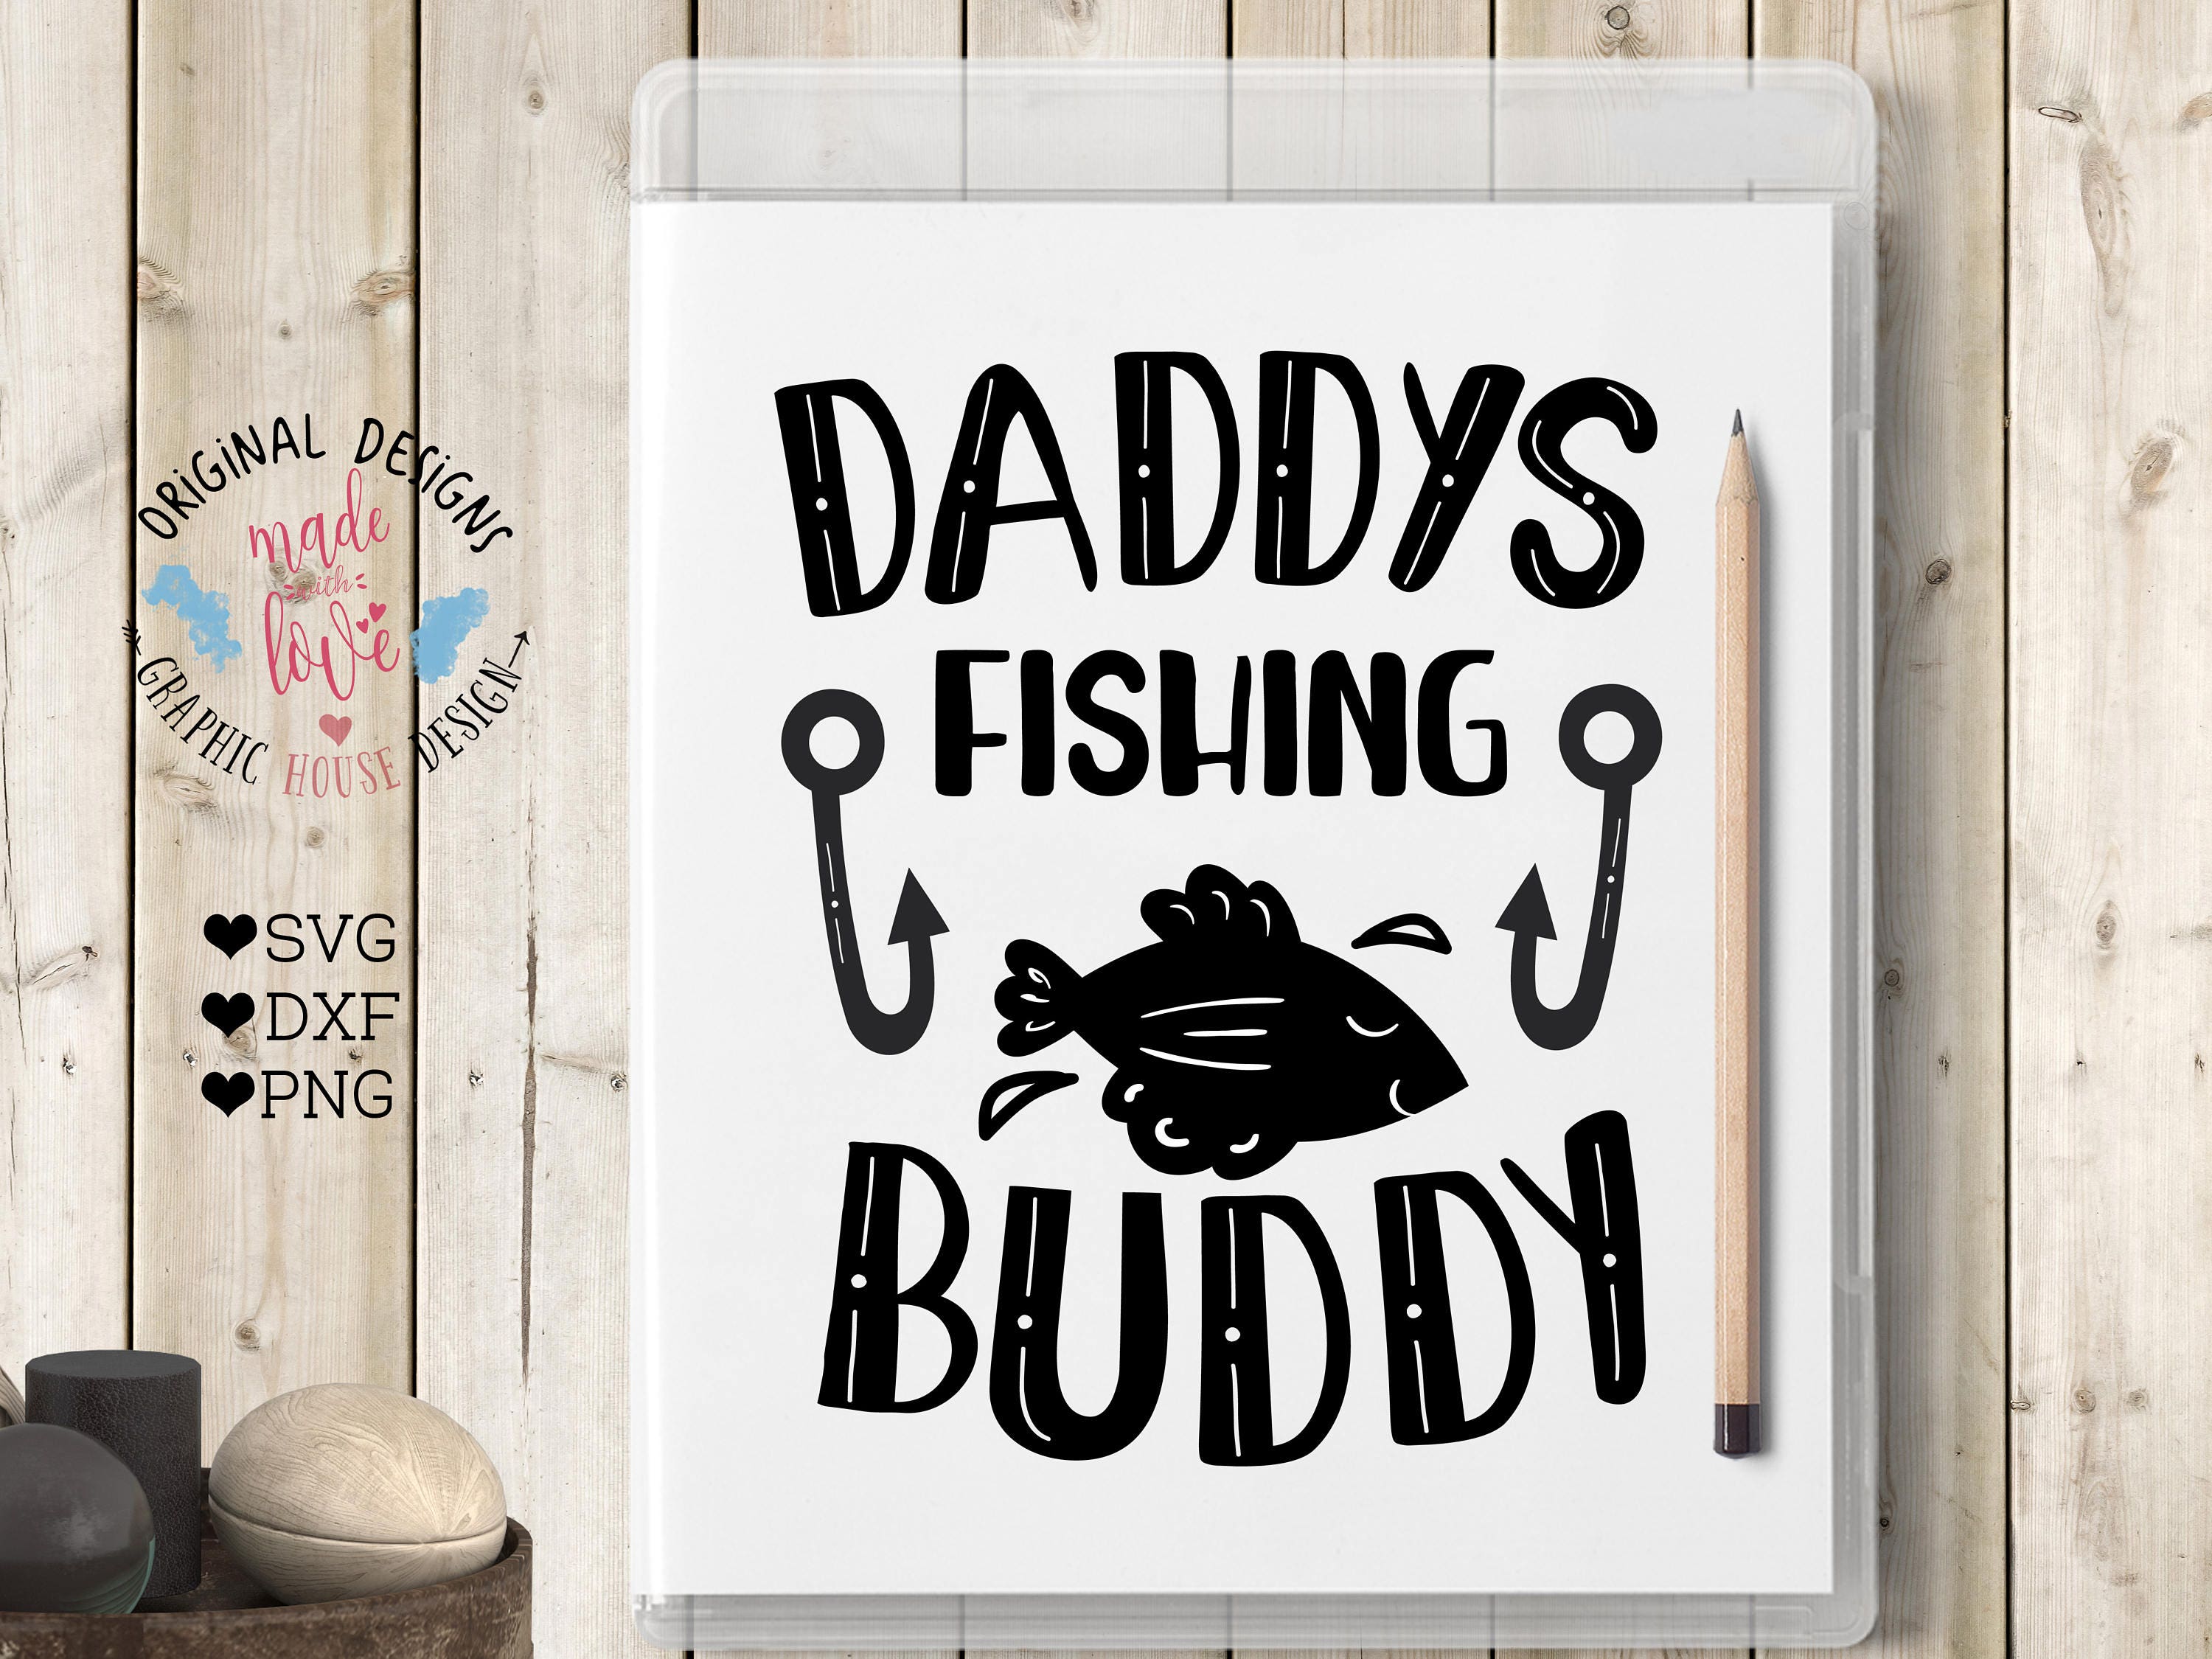 Download svg files daddy svg daddy's fishing buddy boy svg kids